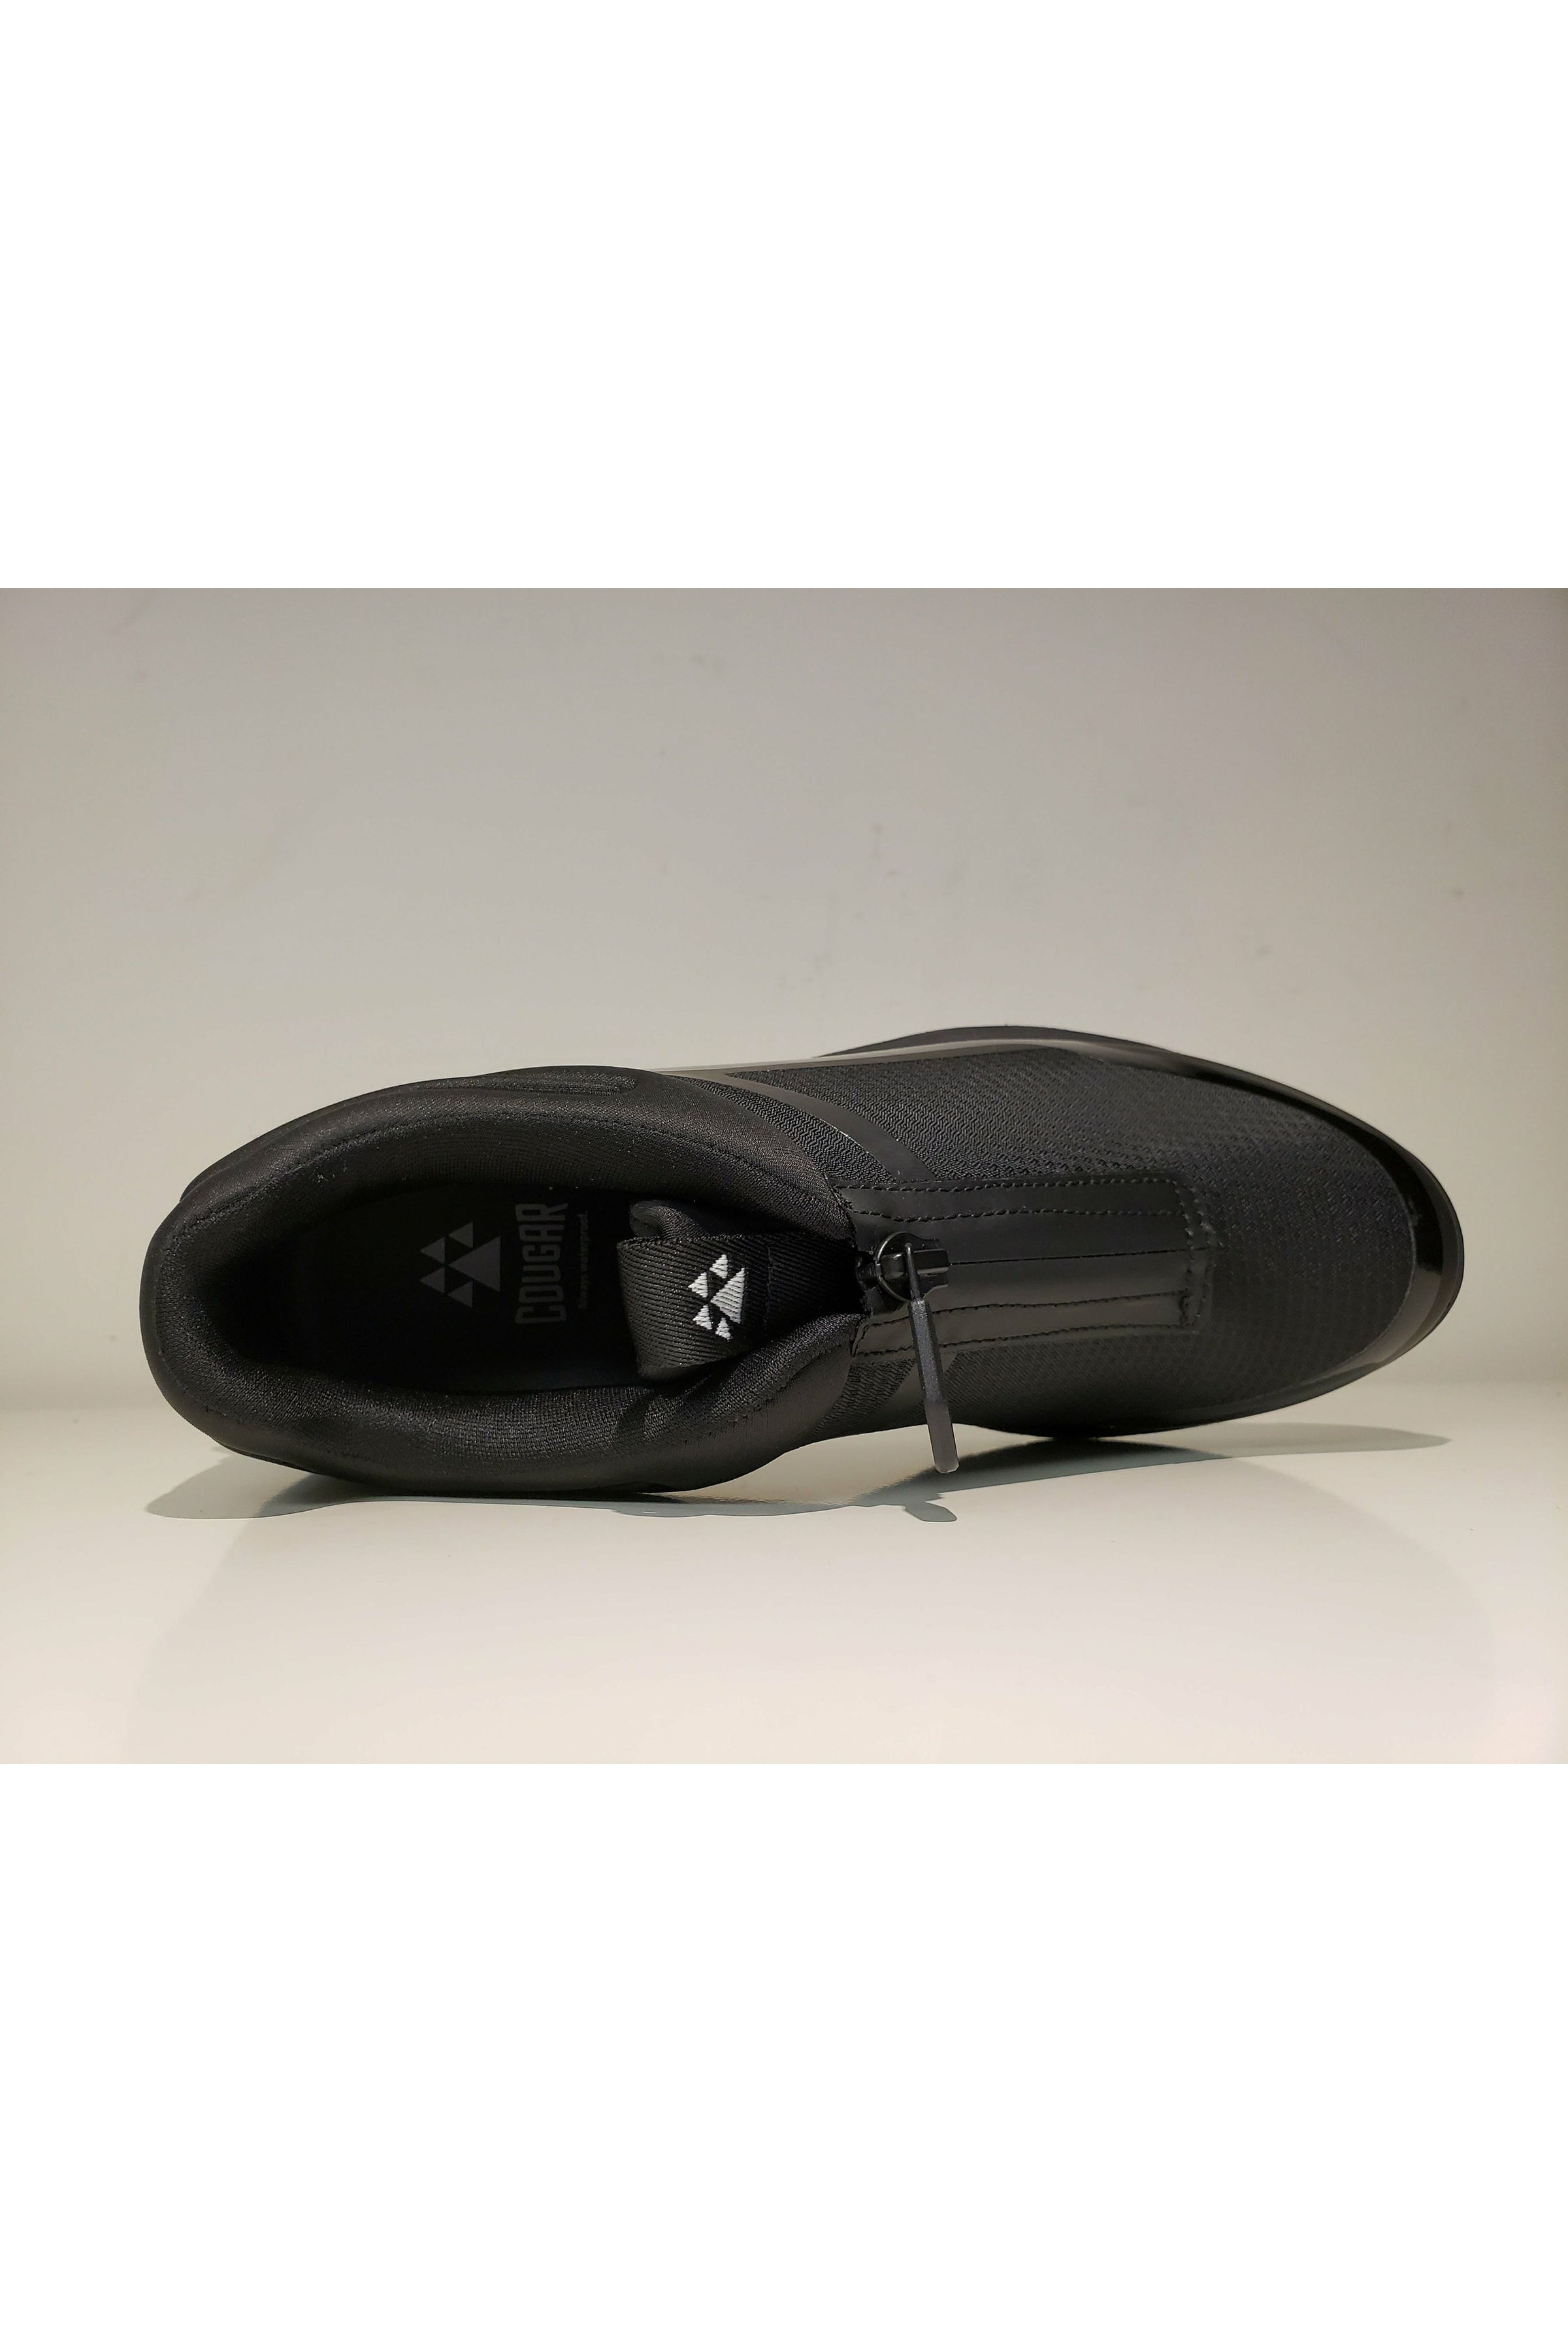 Cougar Nylon Waterproof Sneaker - Style Razzle, top2, black